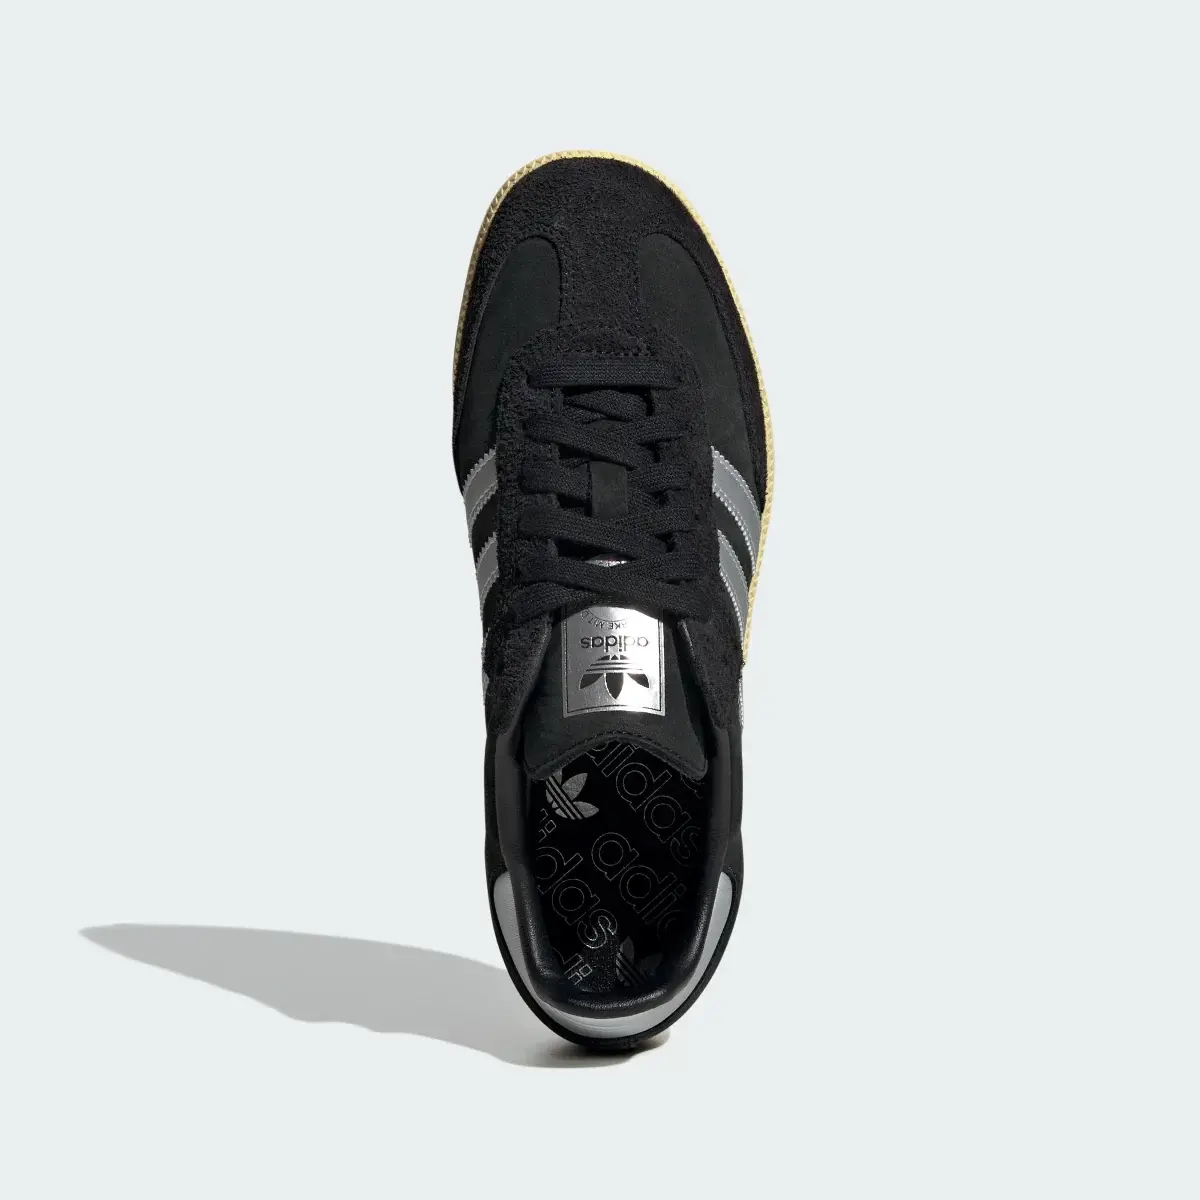 Adidas Samba OG Ayakkabı. 3